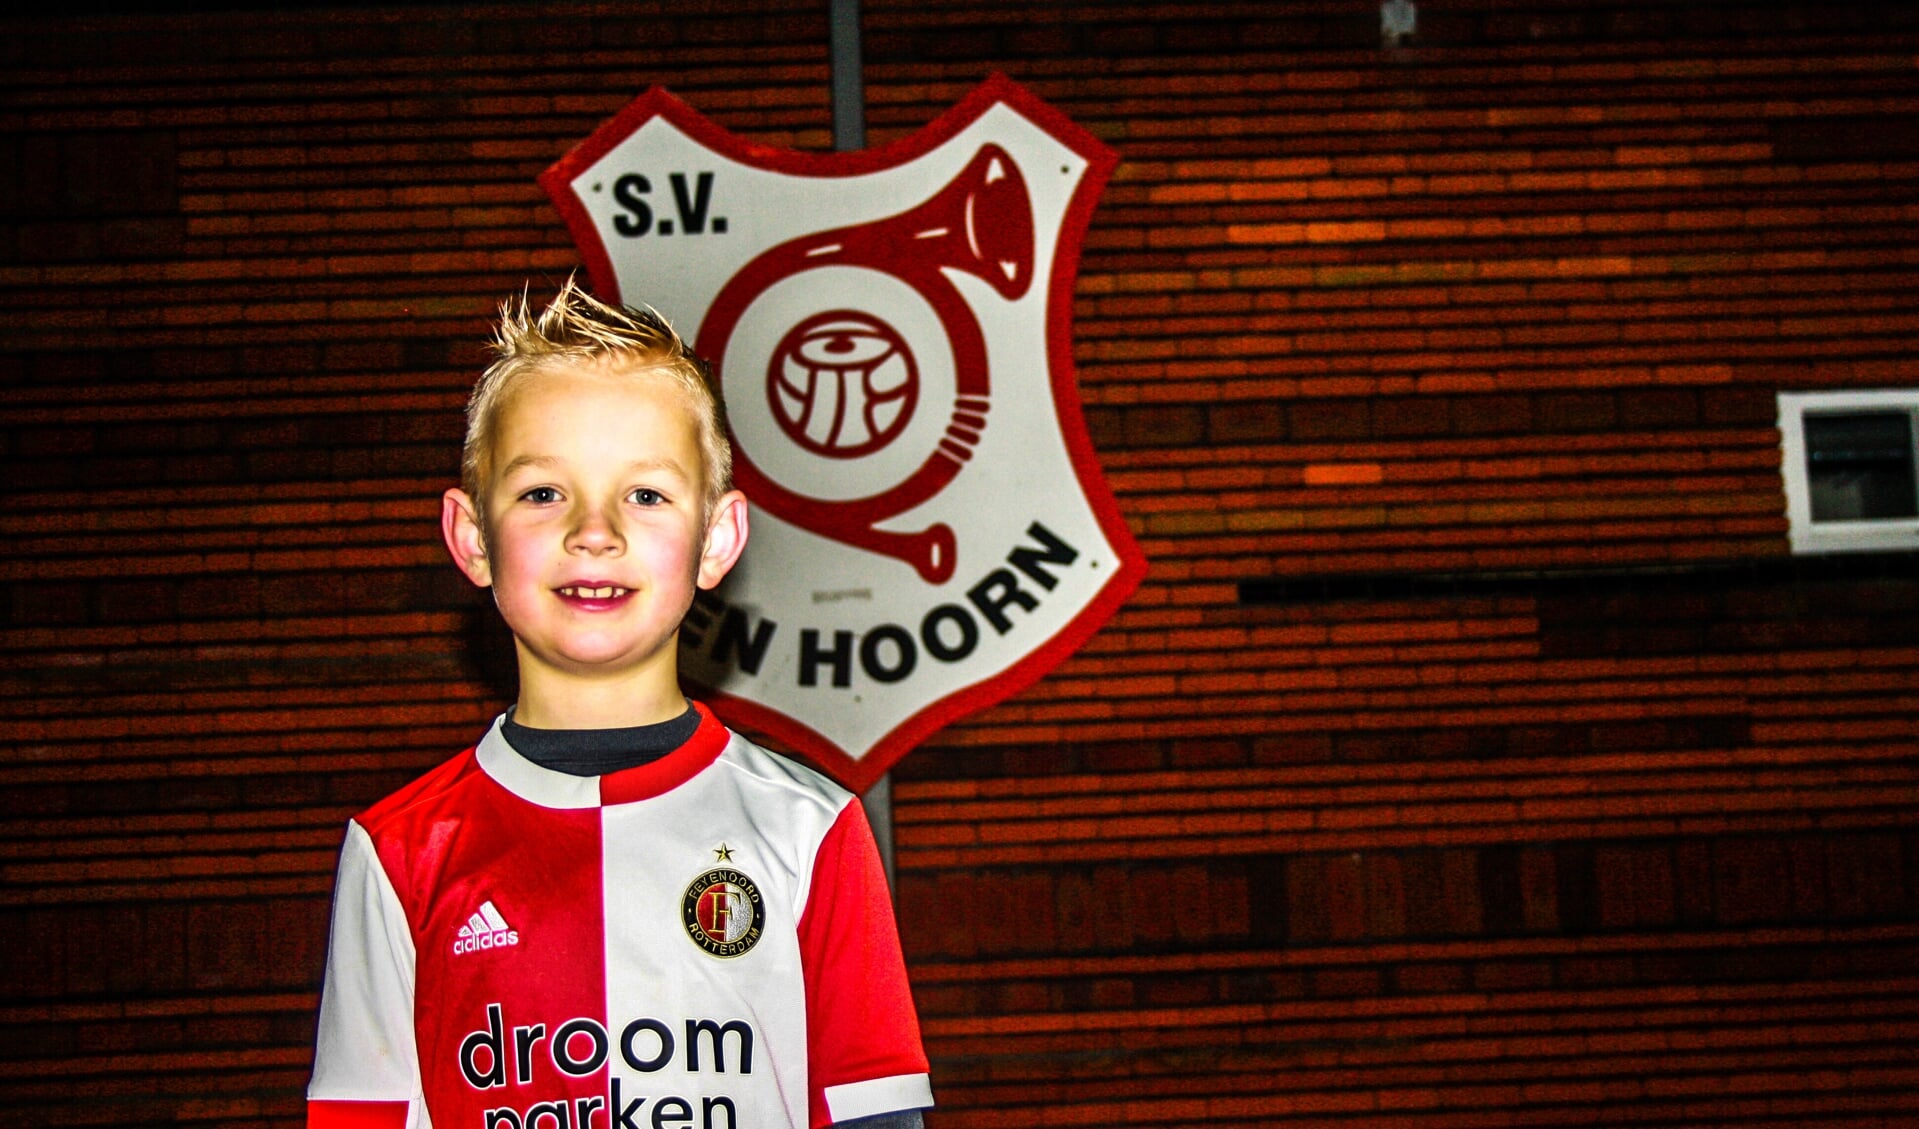 De achtjarige Scott voetbalt zowel bij S.V. Den Hoorn als bij Feyenoord